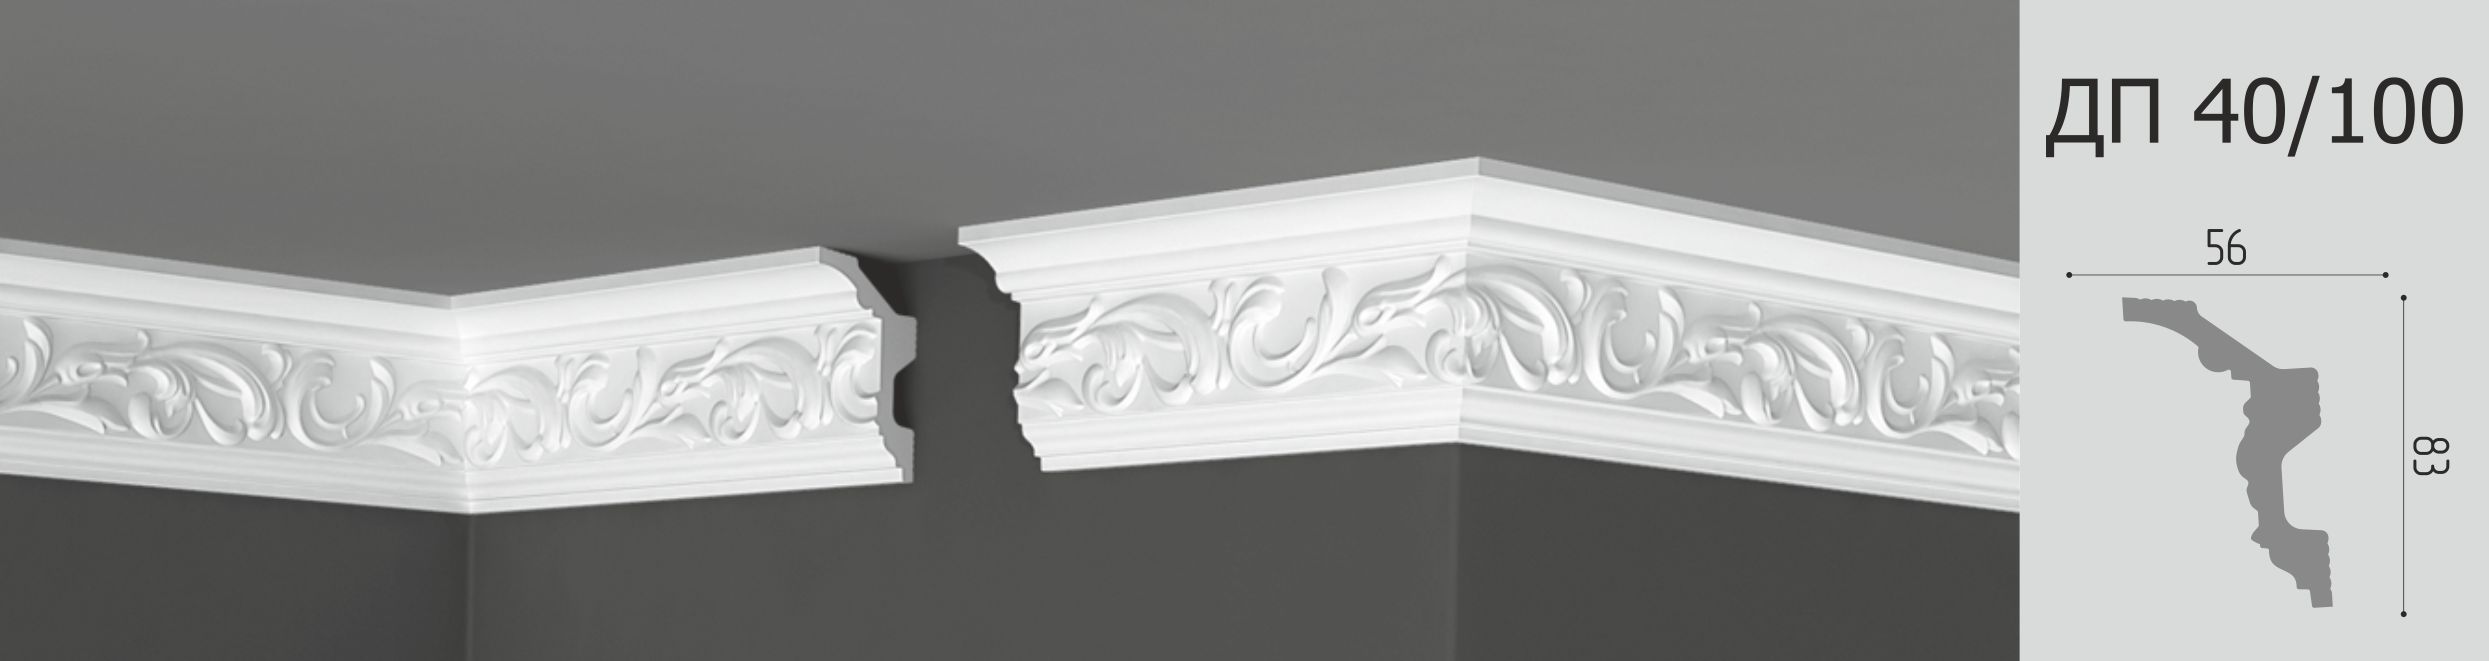 Углы для плинтуса потолочного: Уголки для потолочного плинтуса полистирол белые Формат 5005 30-50 мм 4 шт.